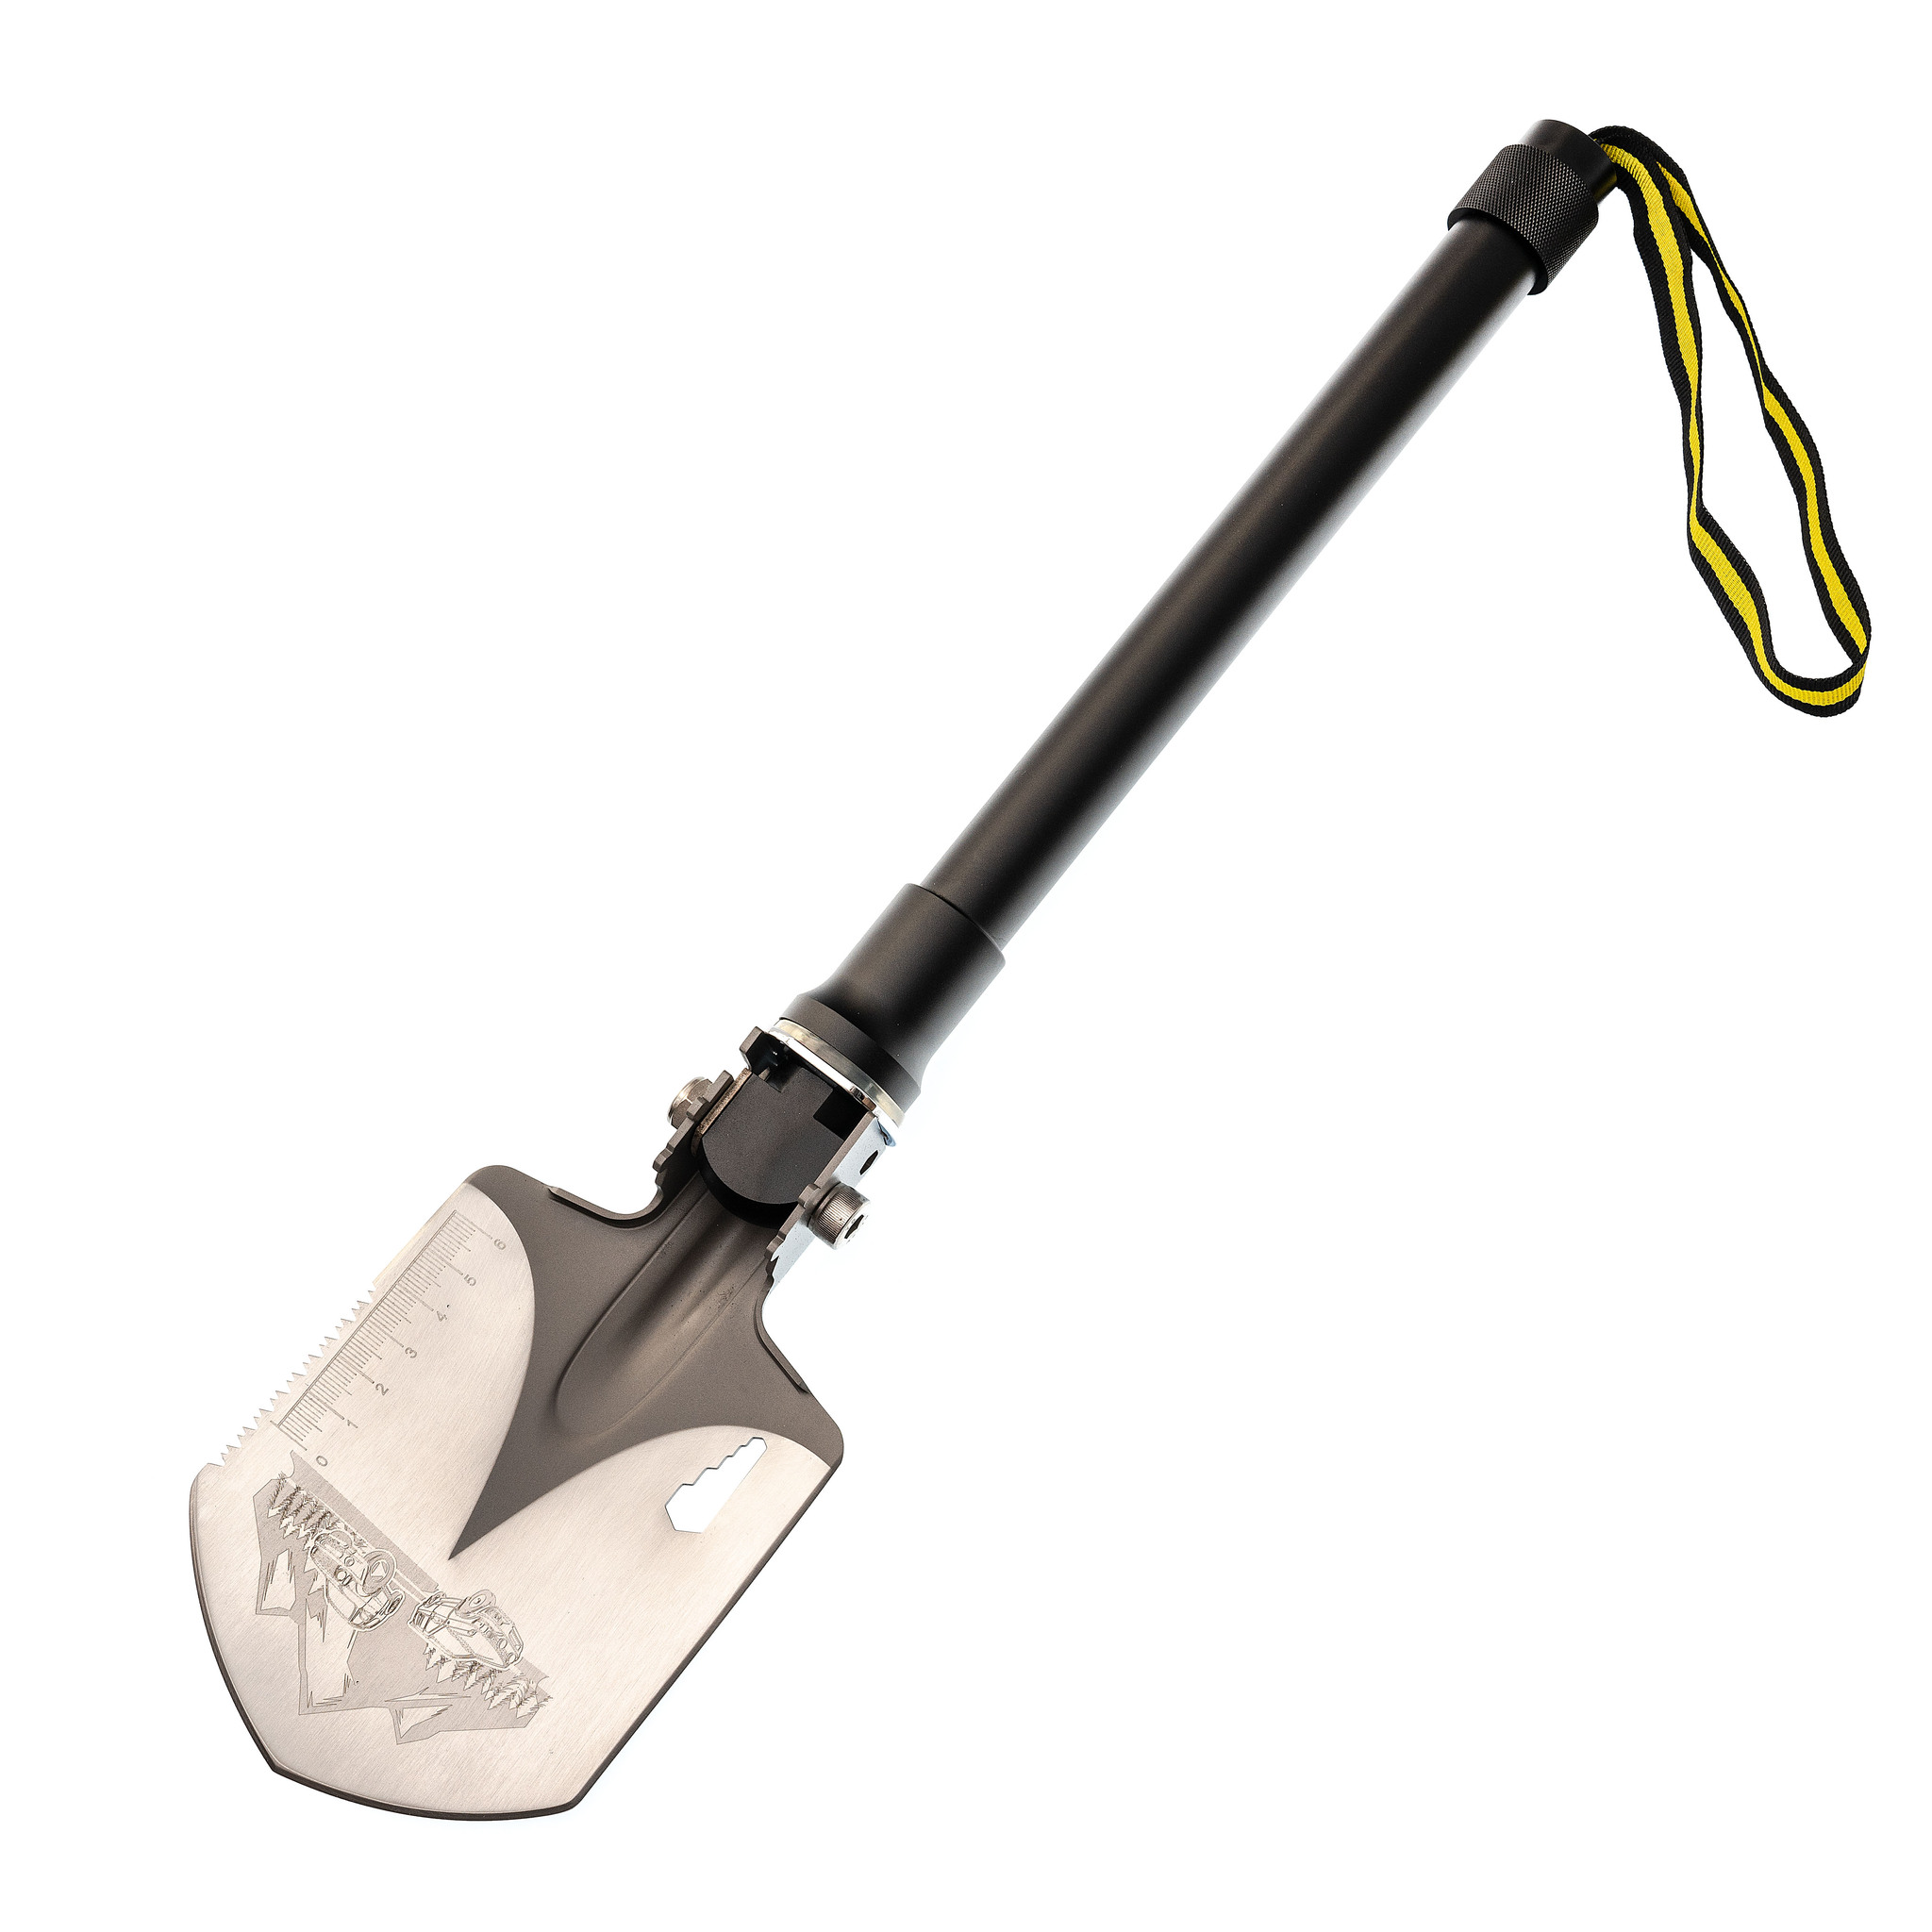 Многофункциональная лопата для выживания 6-в-1, KS-816 по цене 3390.0 .